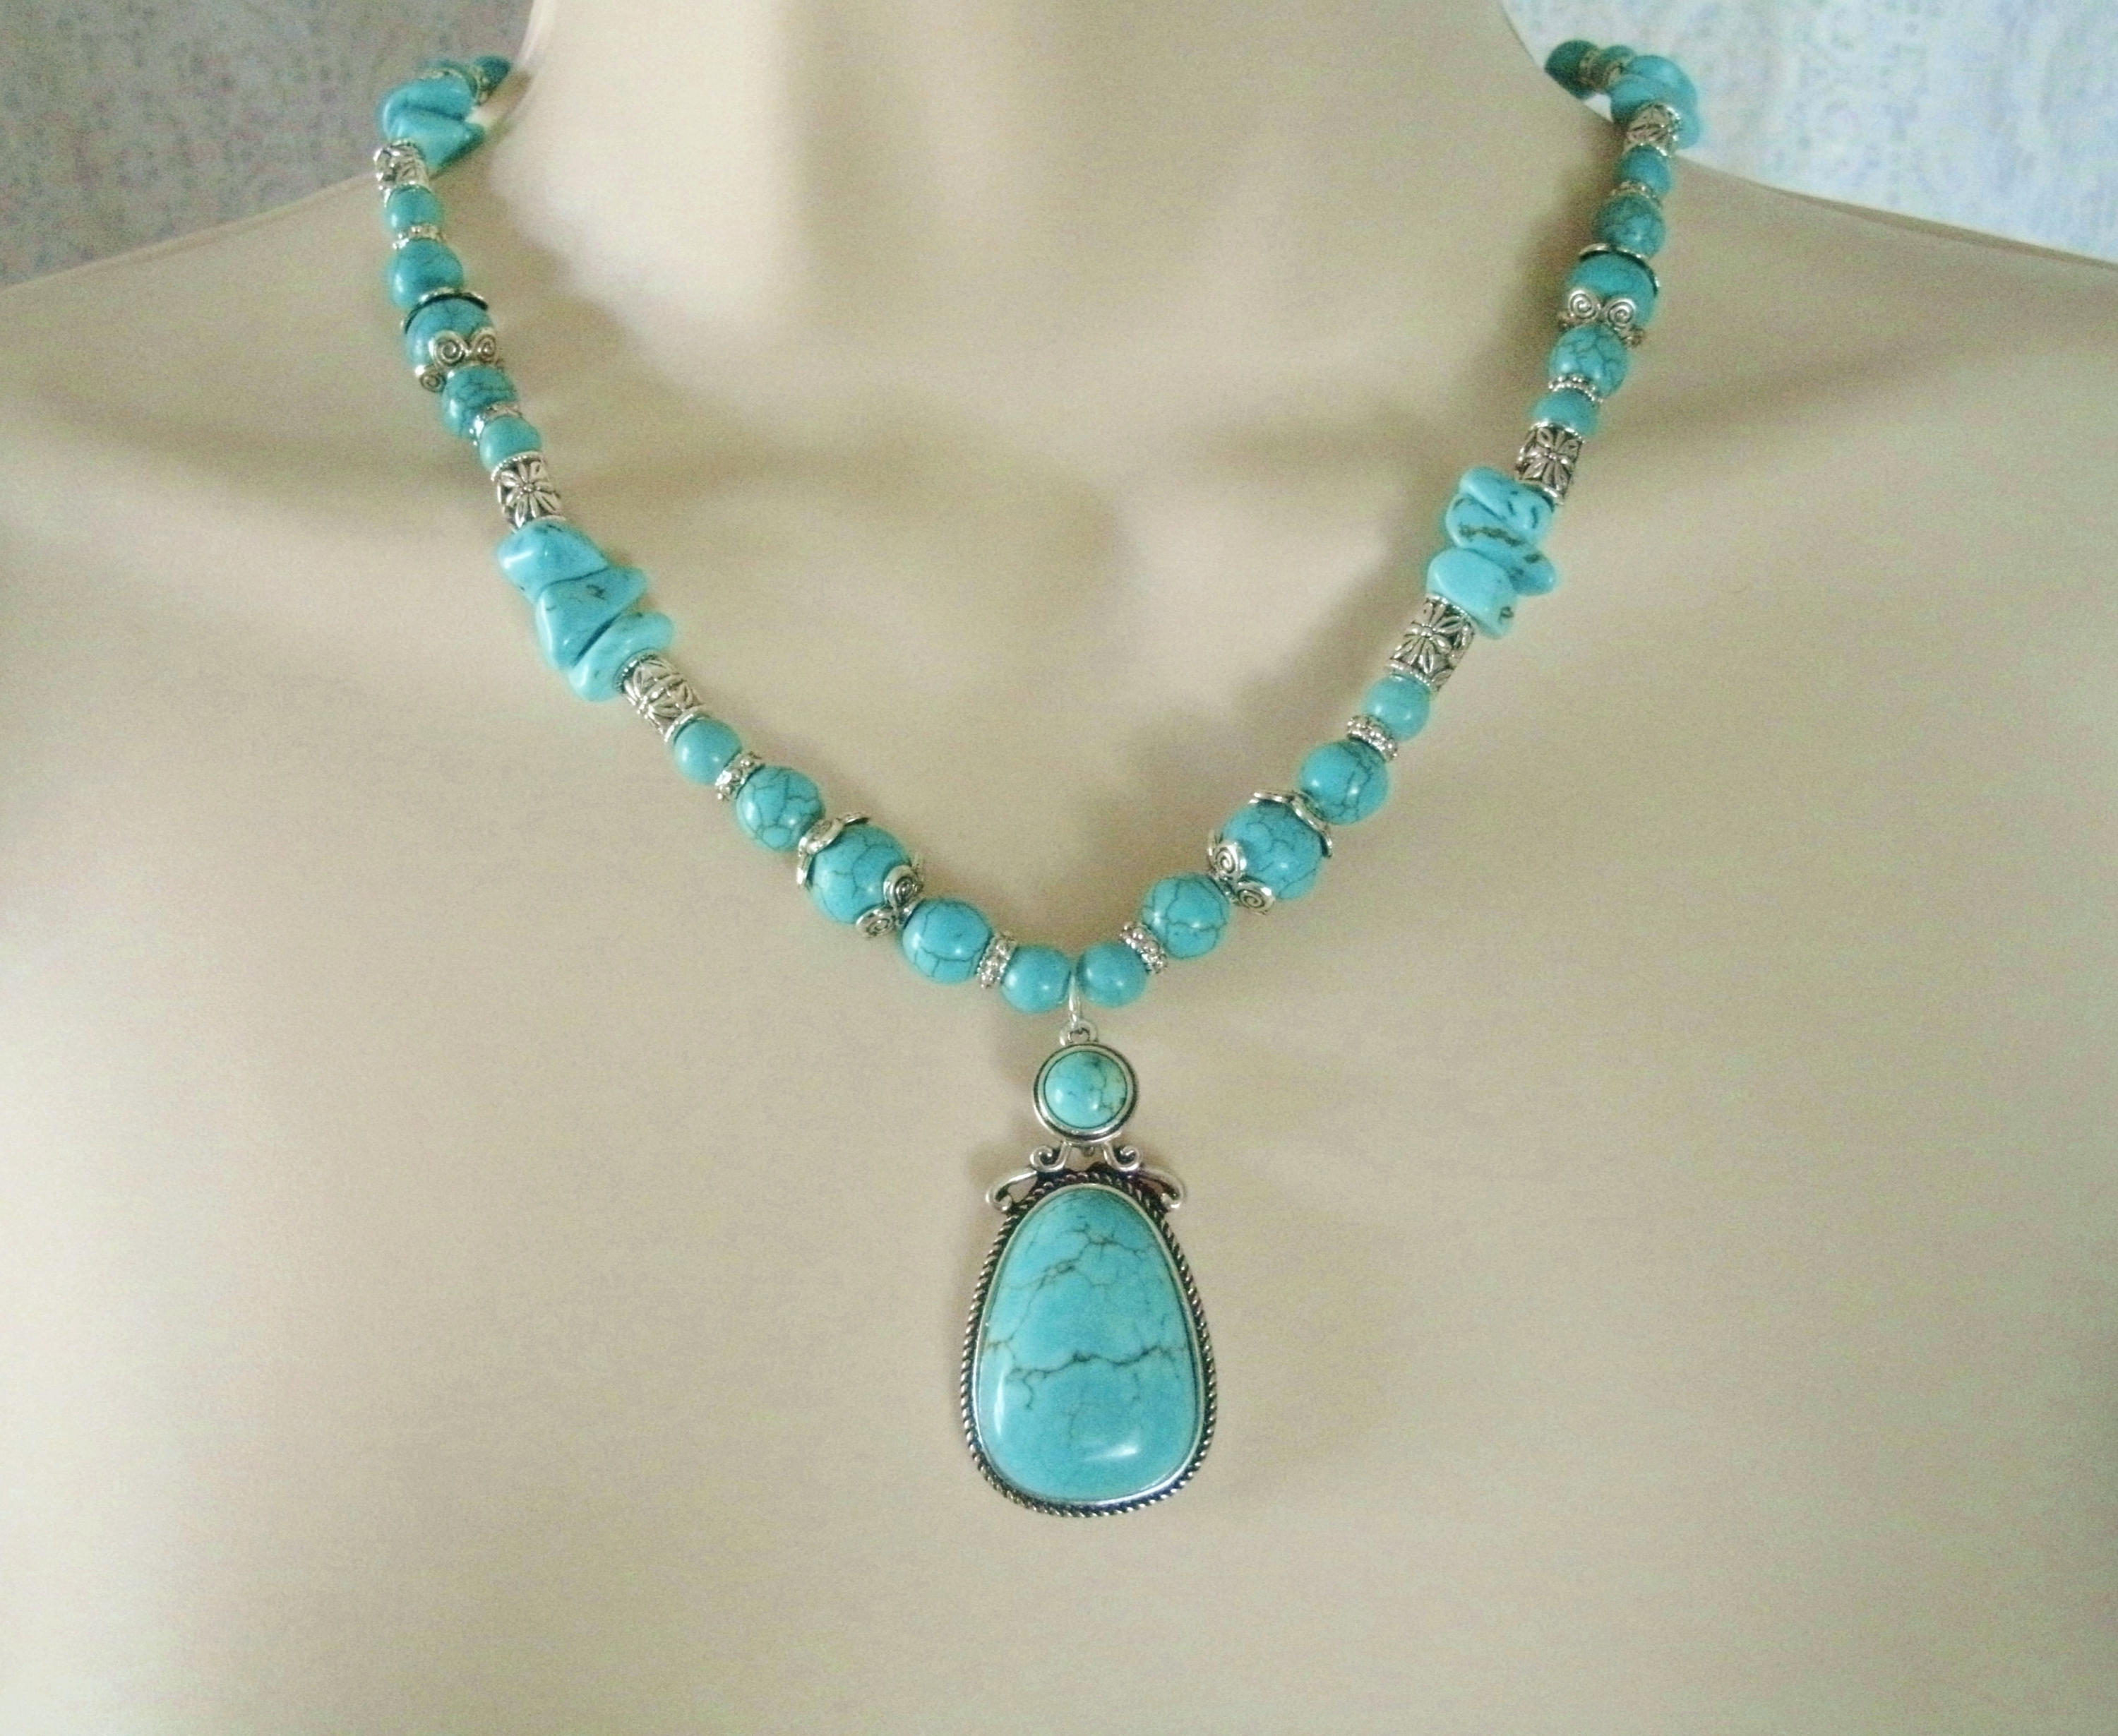 Turquoise Necklace southwestern jewelry southwest jewelry | Etsy